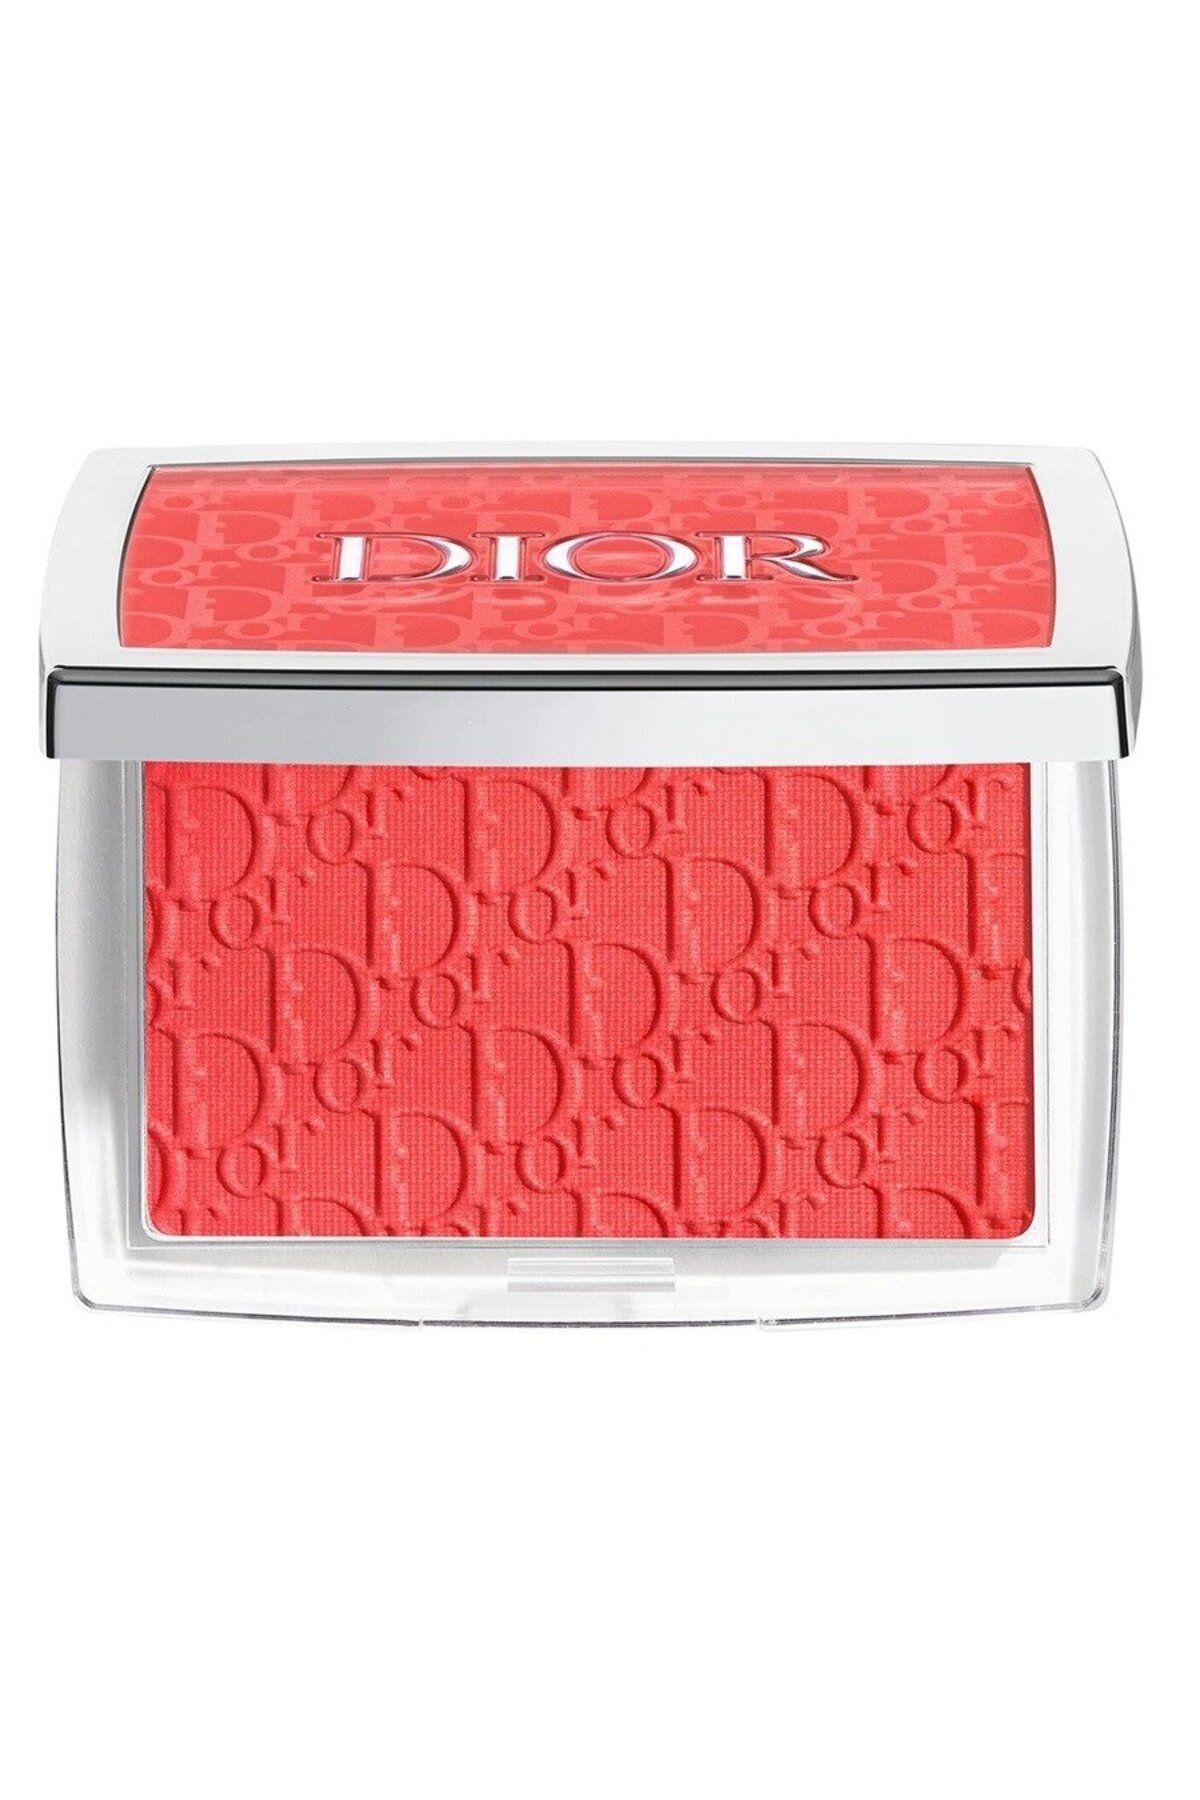 Dior - Allık 015 Cherry - Backstage Rosy Glow 4,4 gr